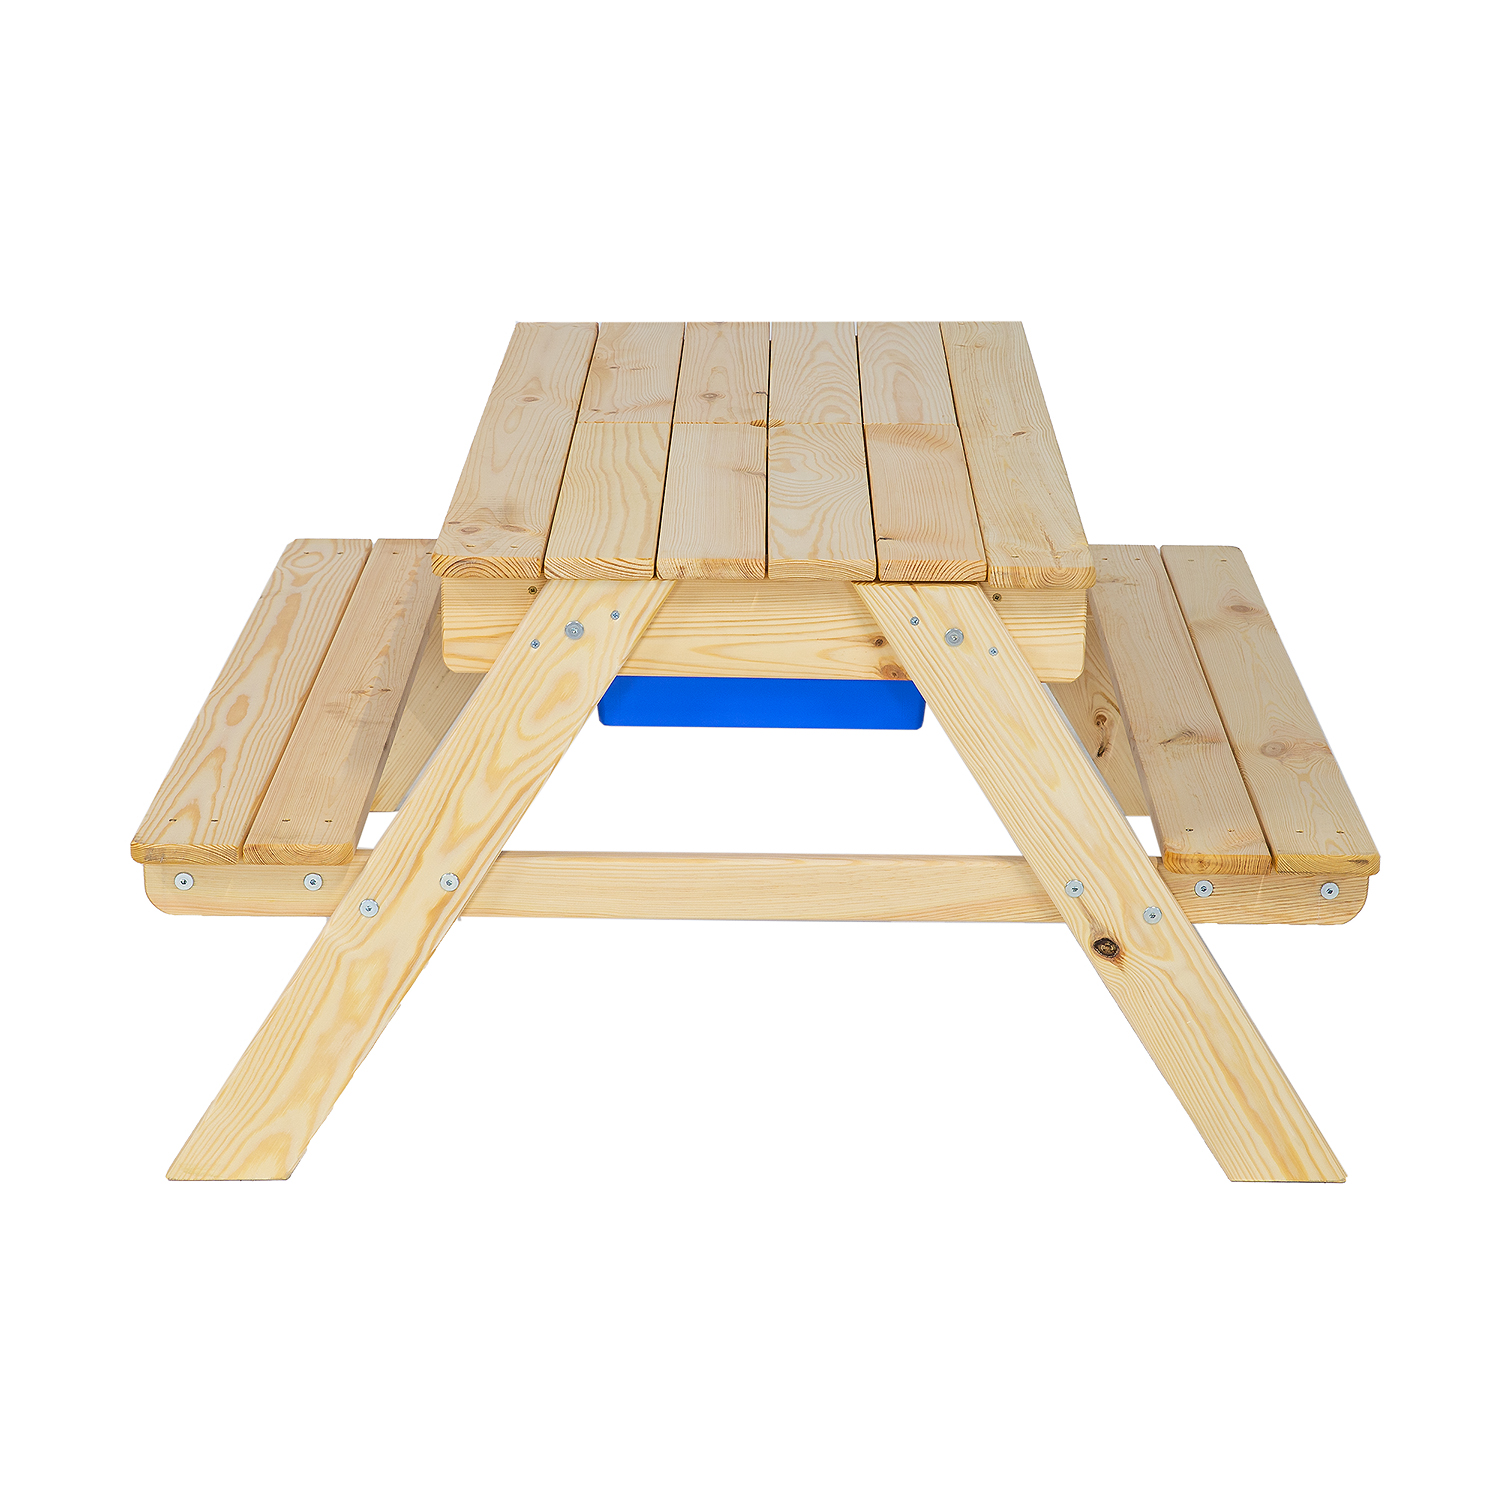 Zahradní dětský stůl MILA s lavicemi, smrkové dřevo, 94x50x94 cm, Týk